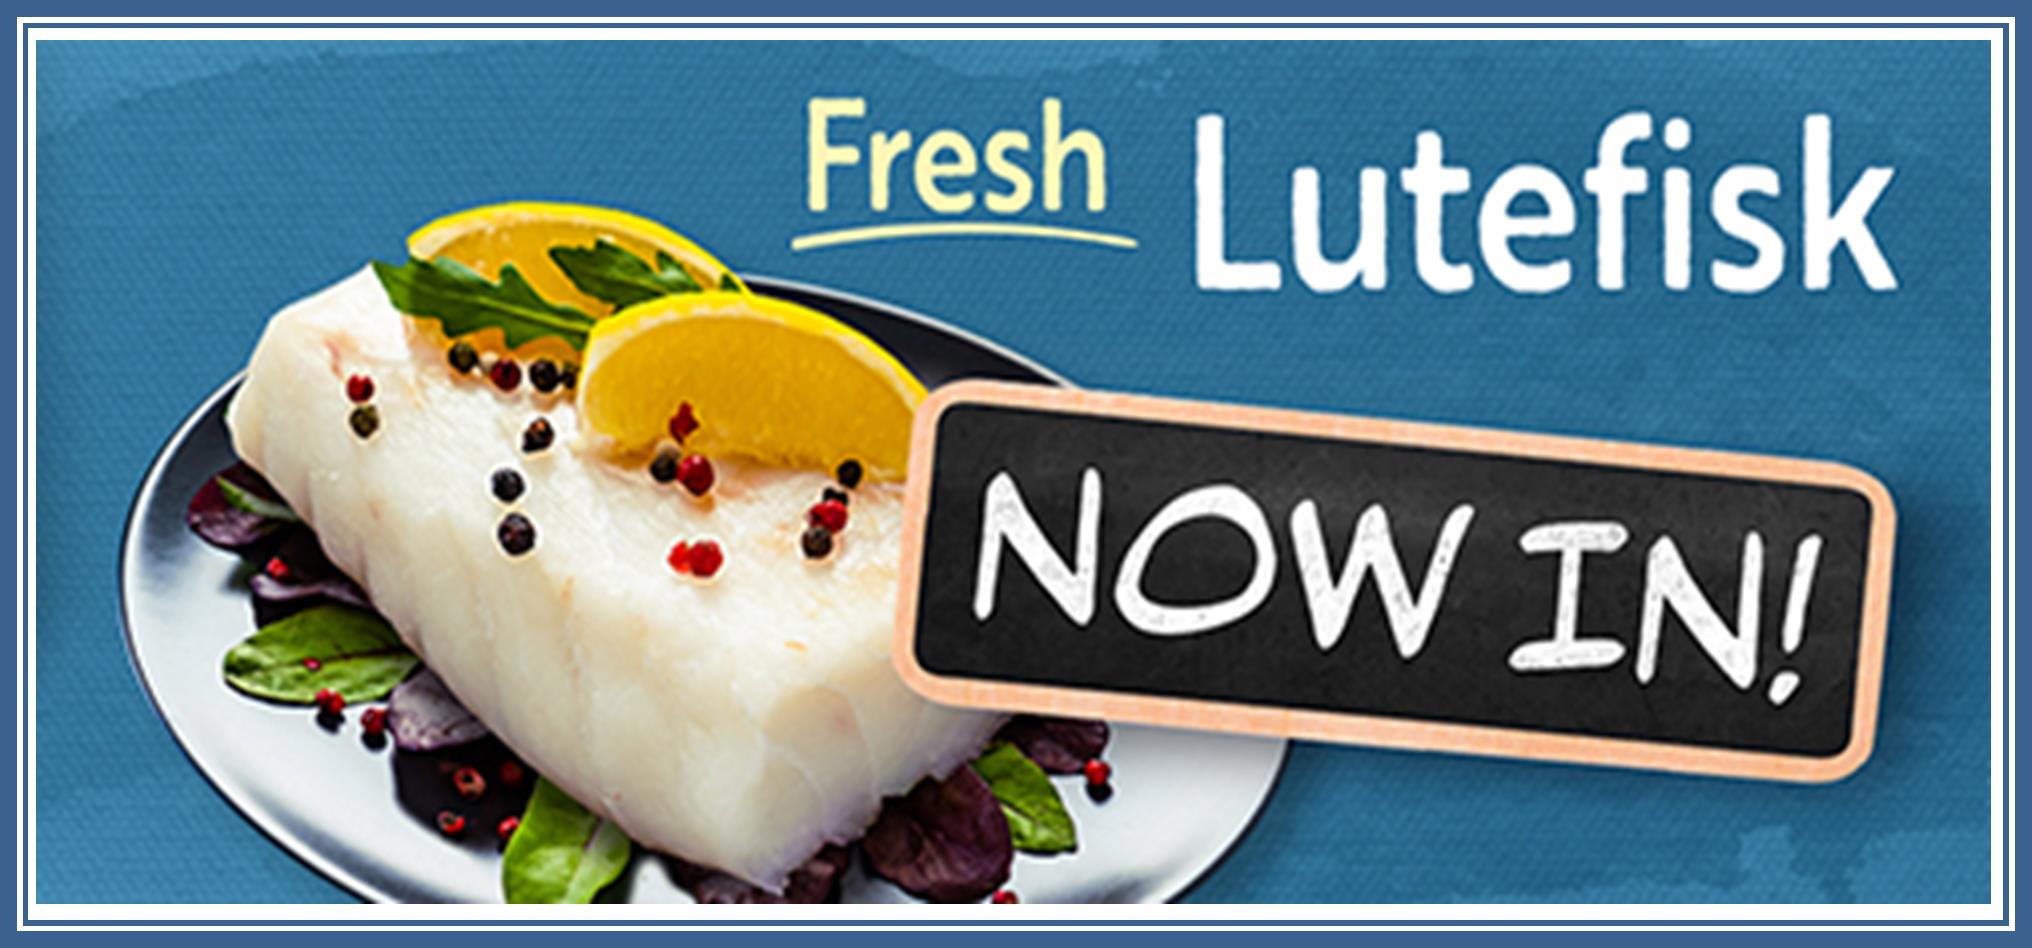 Lutefisk Now In.jpg